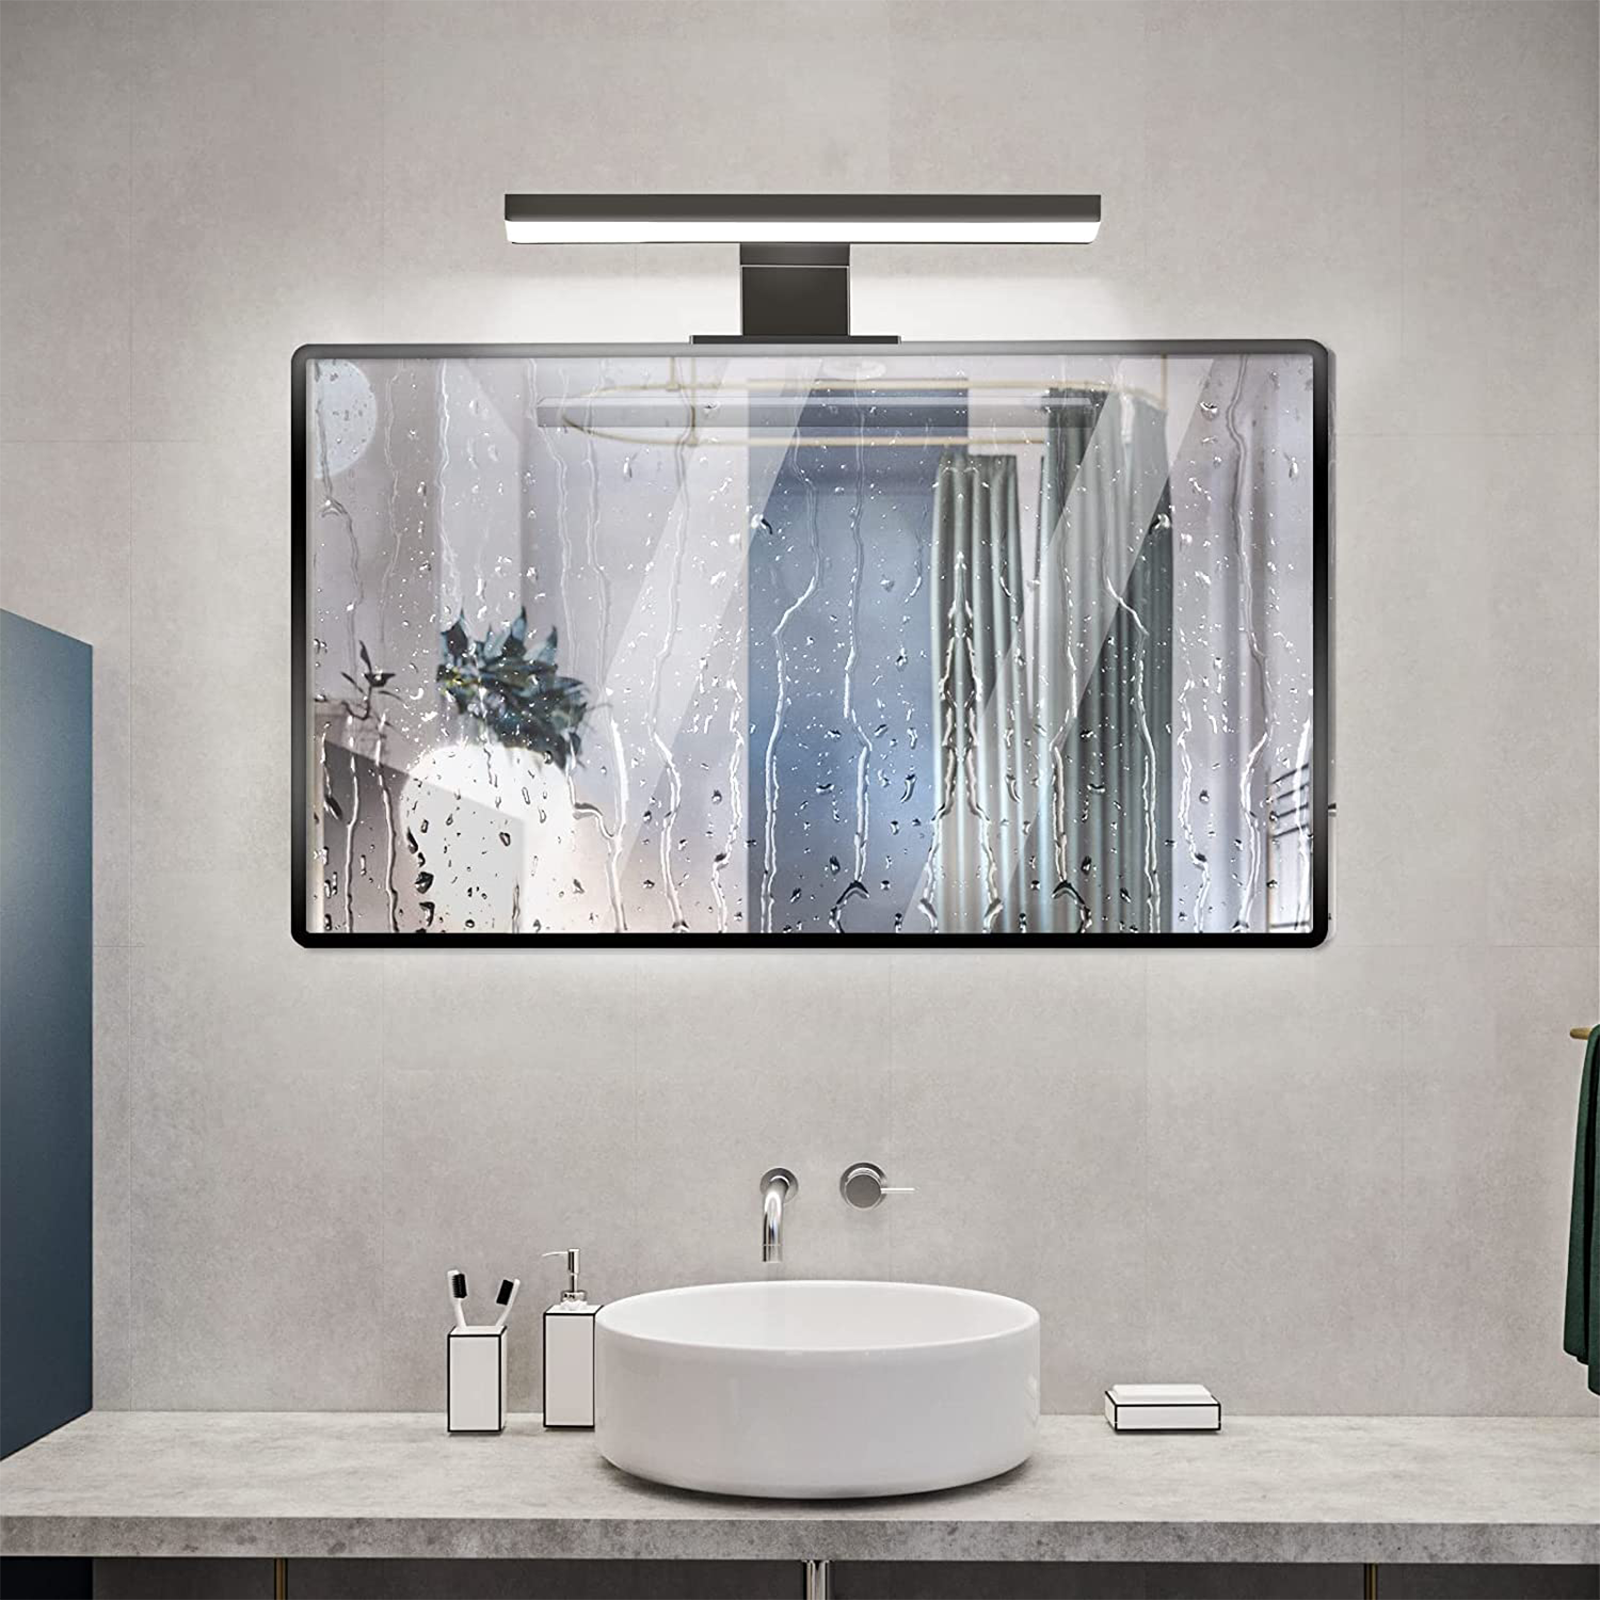 Applique lampada led per specchio bagno liscio o con cornice 12 cm